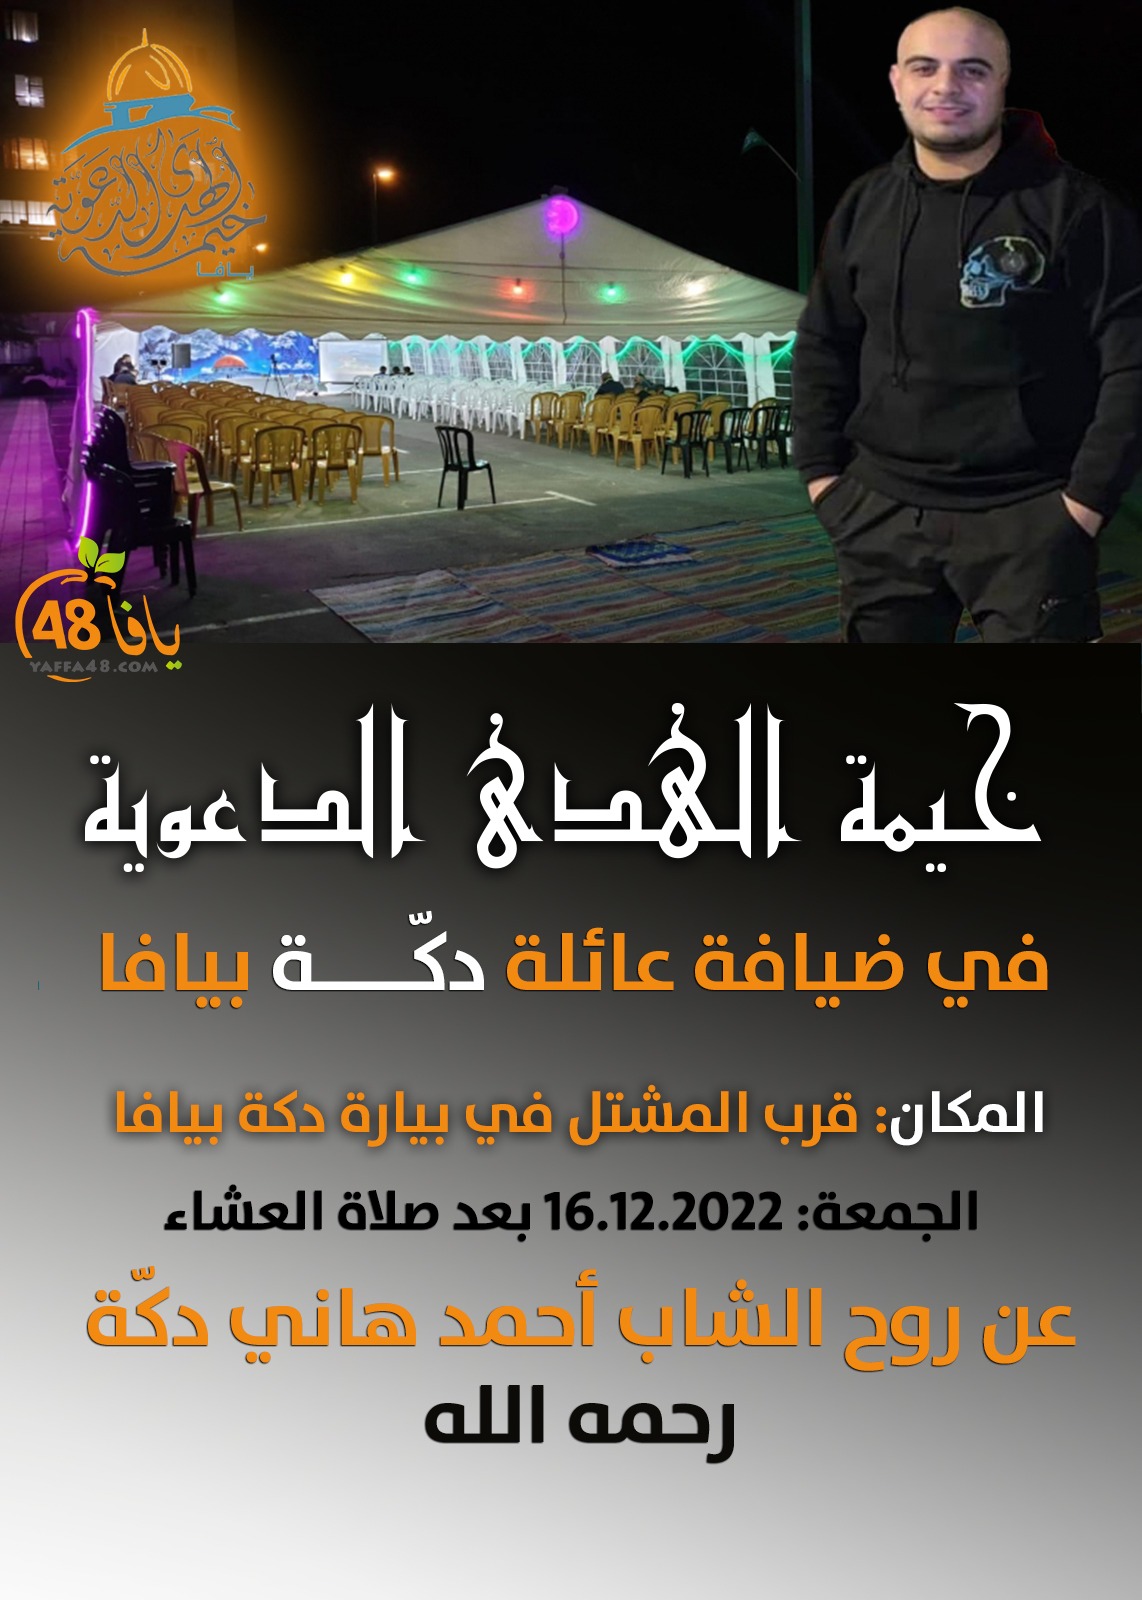 الجمعة: خيمة الهدى عن روح الشاب أحمد هاني دكة في يافا